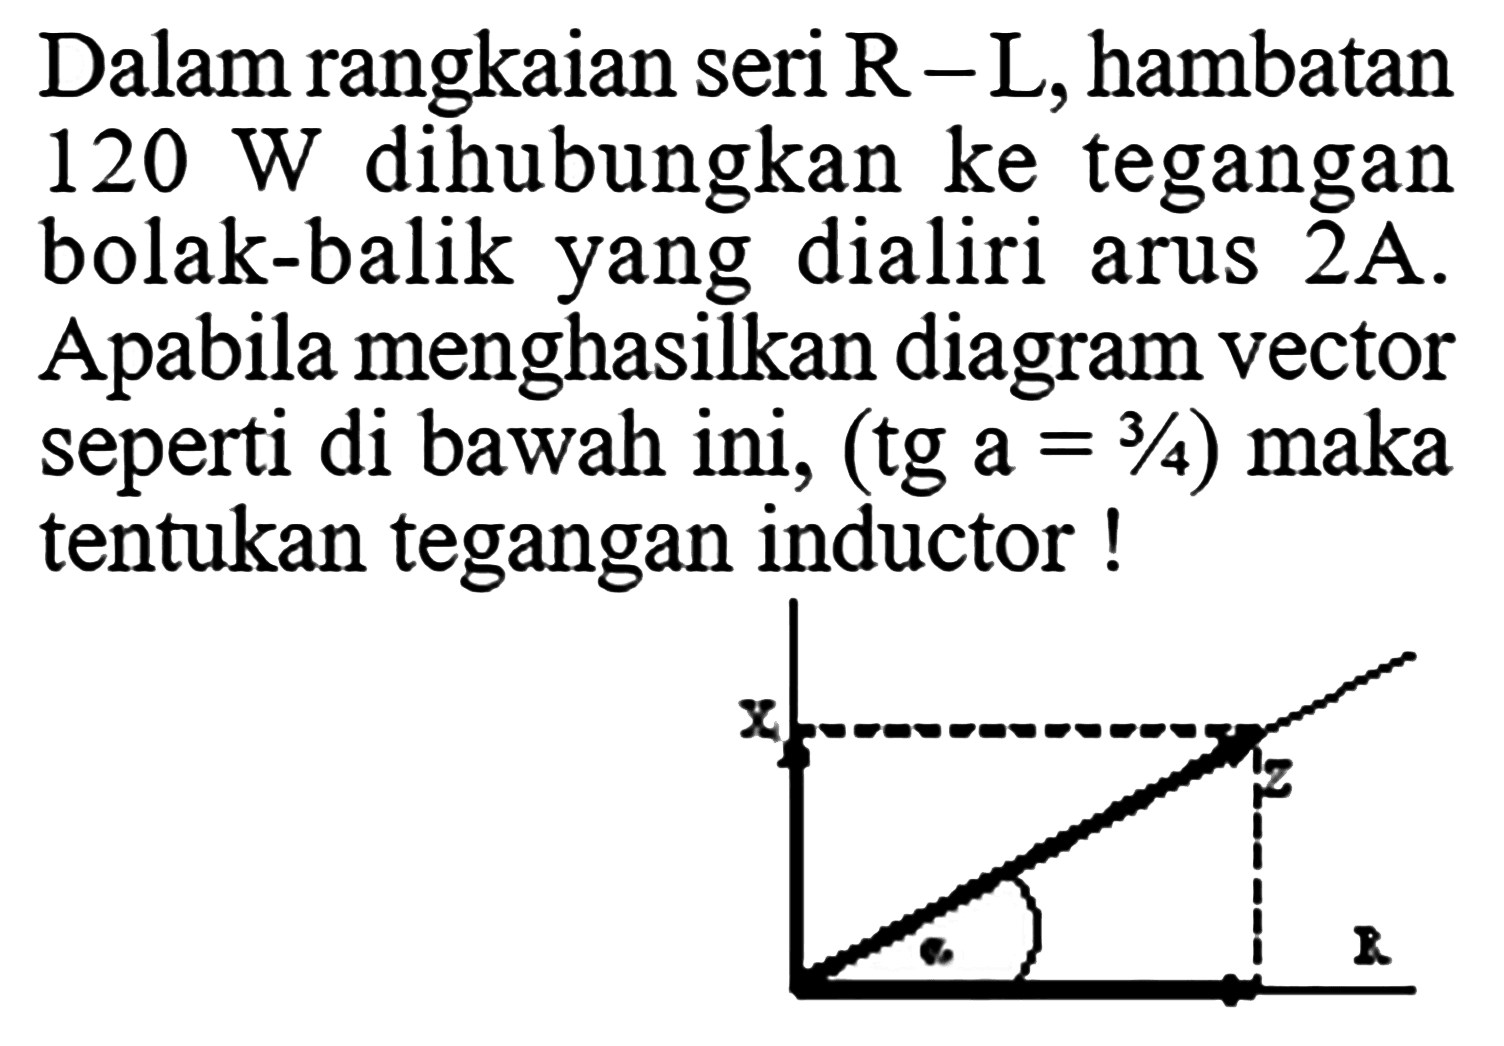 Dalam rangkaian seri R - L, hambatan 120 W dihubungkan ke tegangan bolak-balik yang dialiri arus 2A. Apabila menghasiikan diagram vector seperti di bawah ini, (tg a = 3/4) maka tentukan tegangan inductor ! x z R